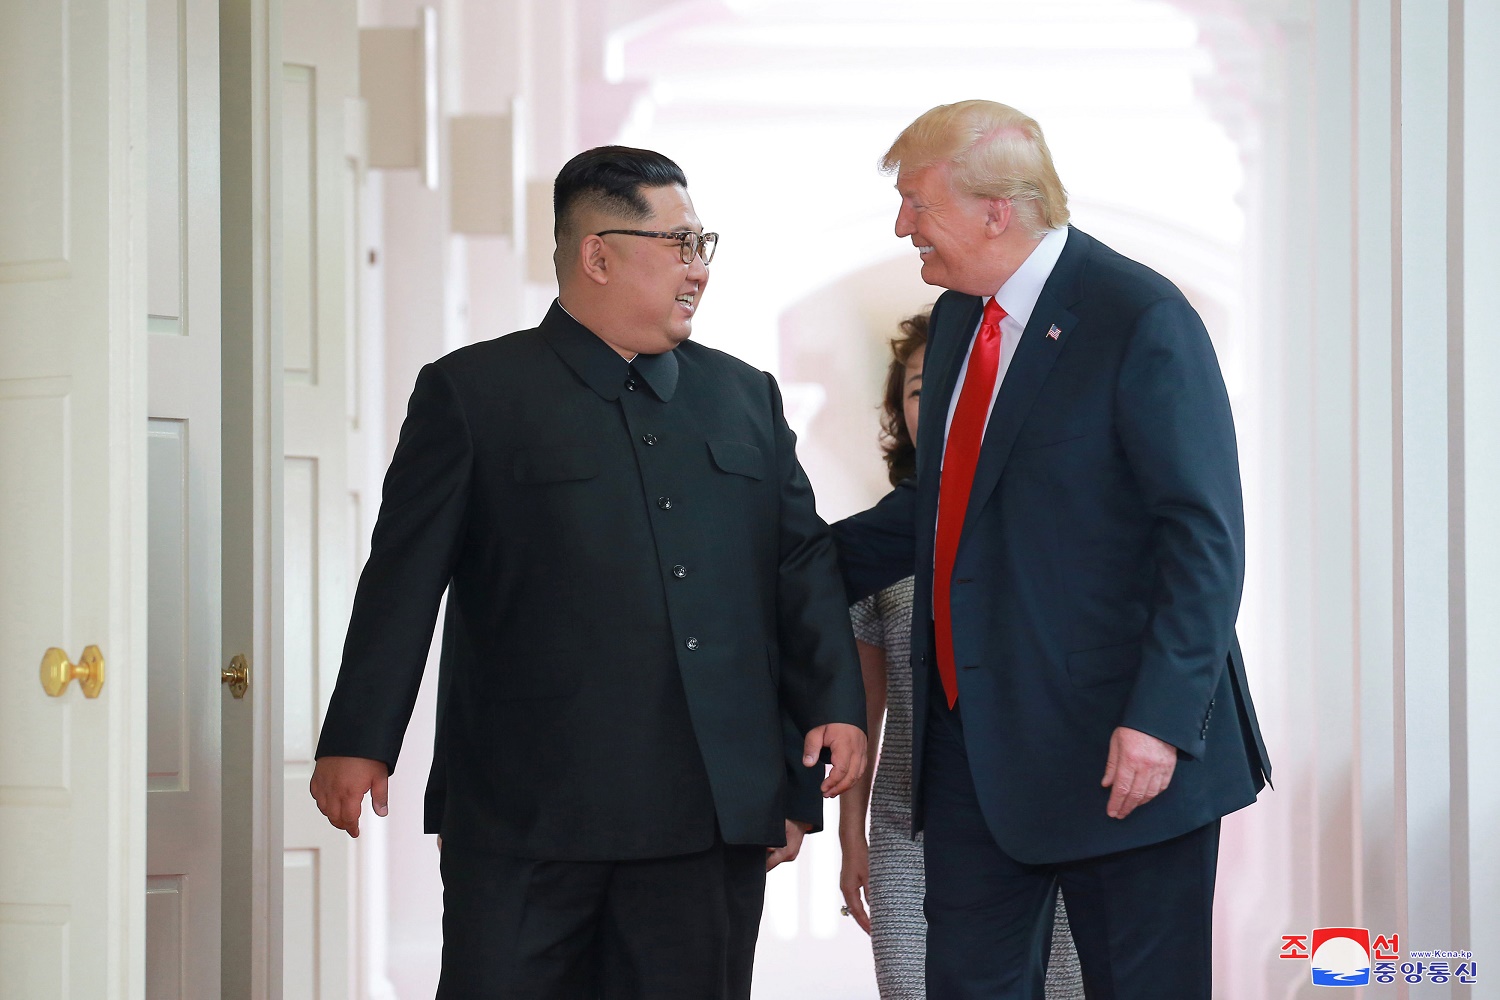 Trump agradece a Kim Jong-un por haber “cumplido su promesa” tras liberación de soldados